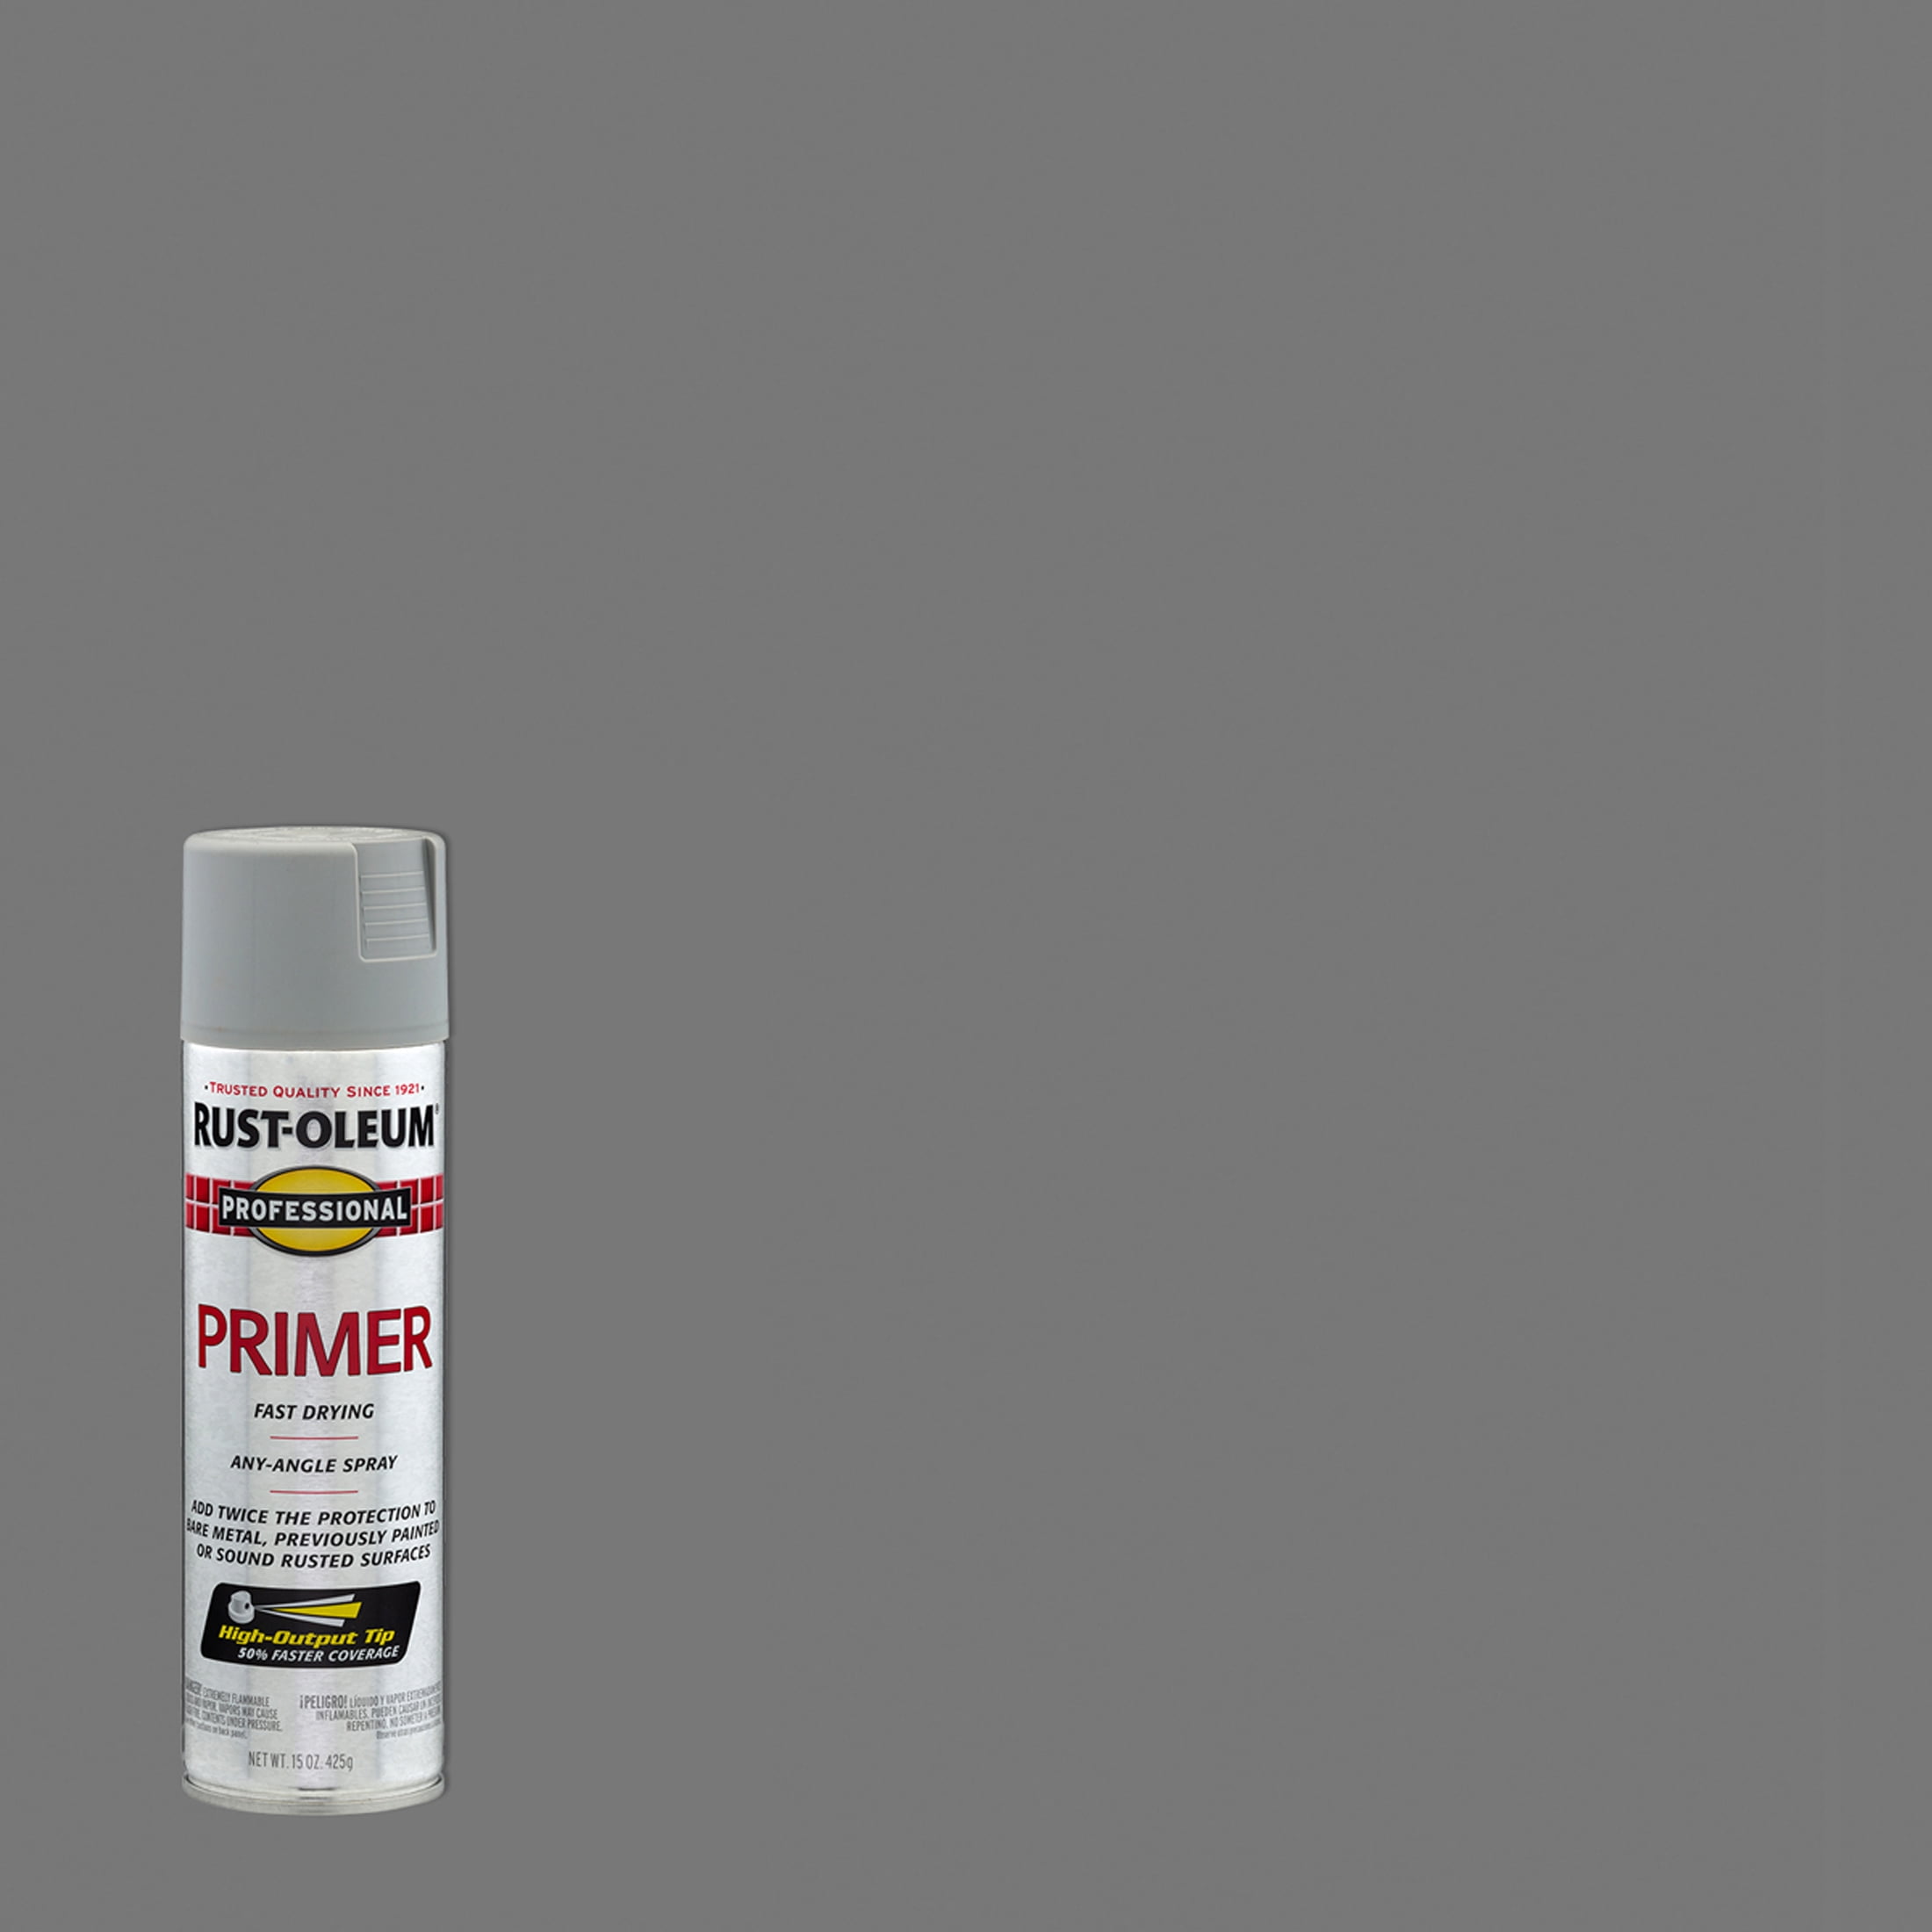 Rust-Oleum 209460 Plastic Primer Spray - 6 Pack